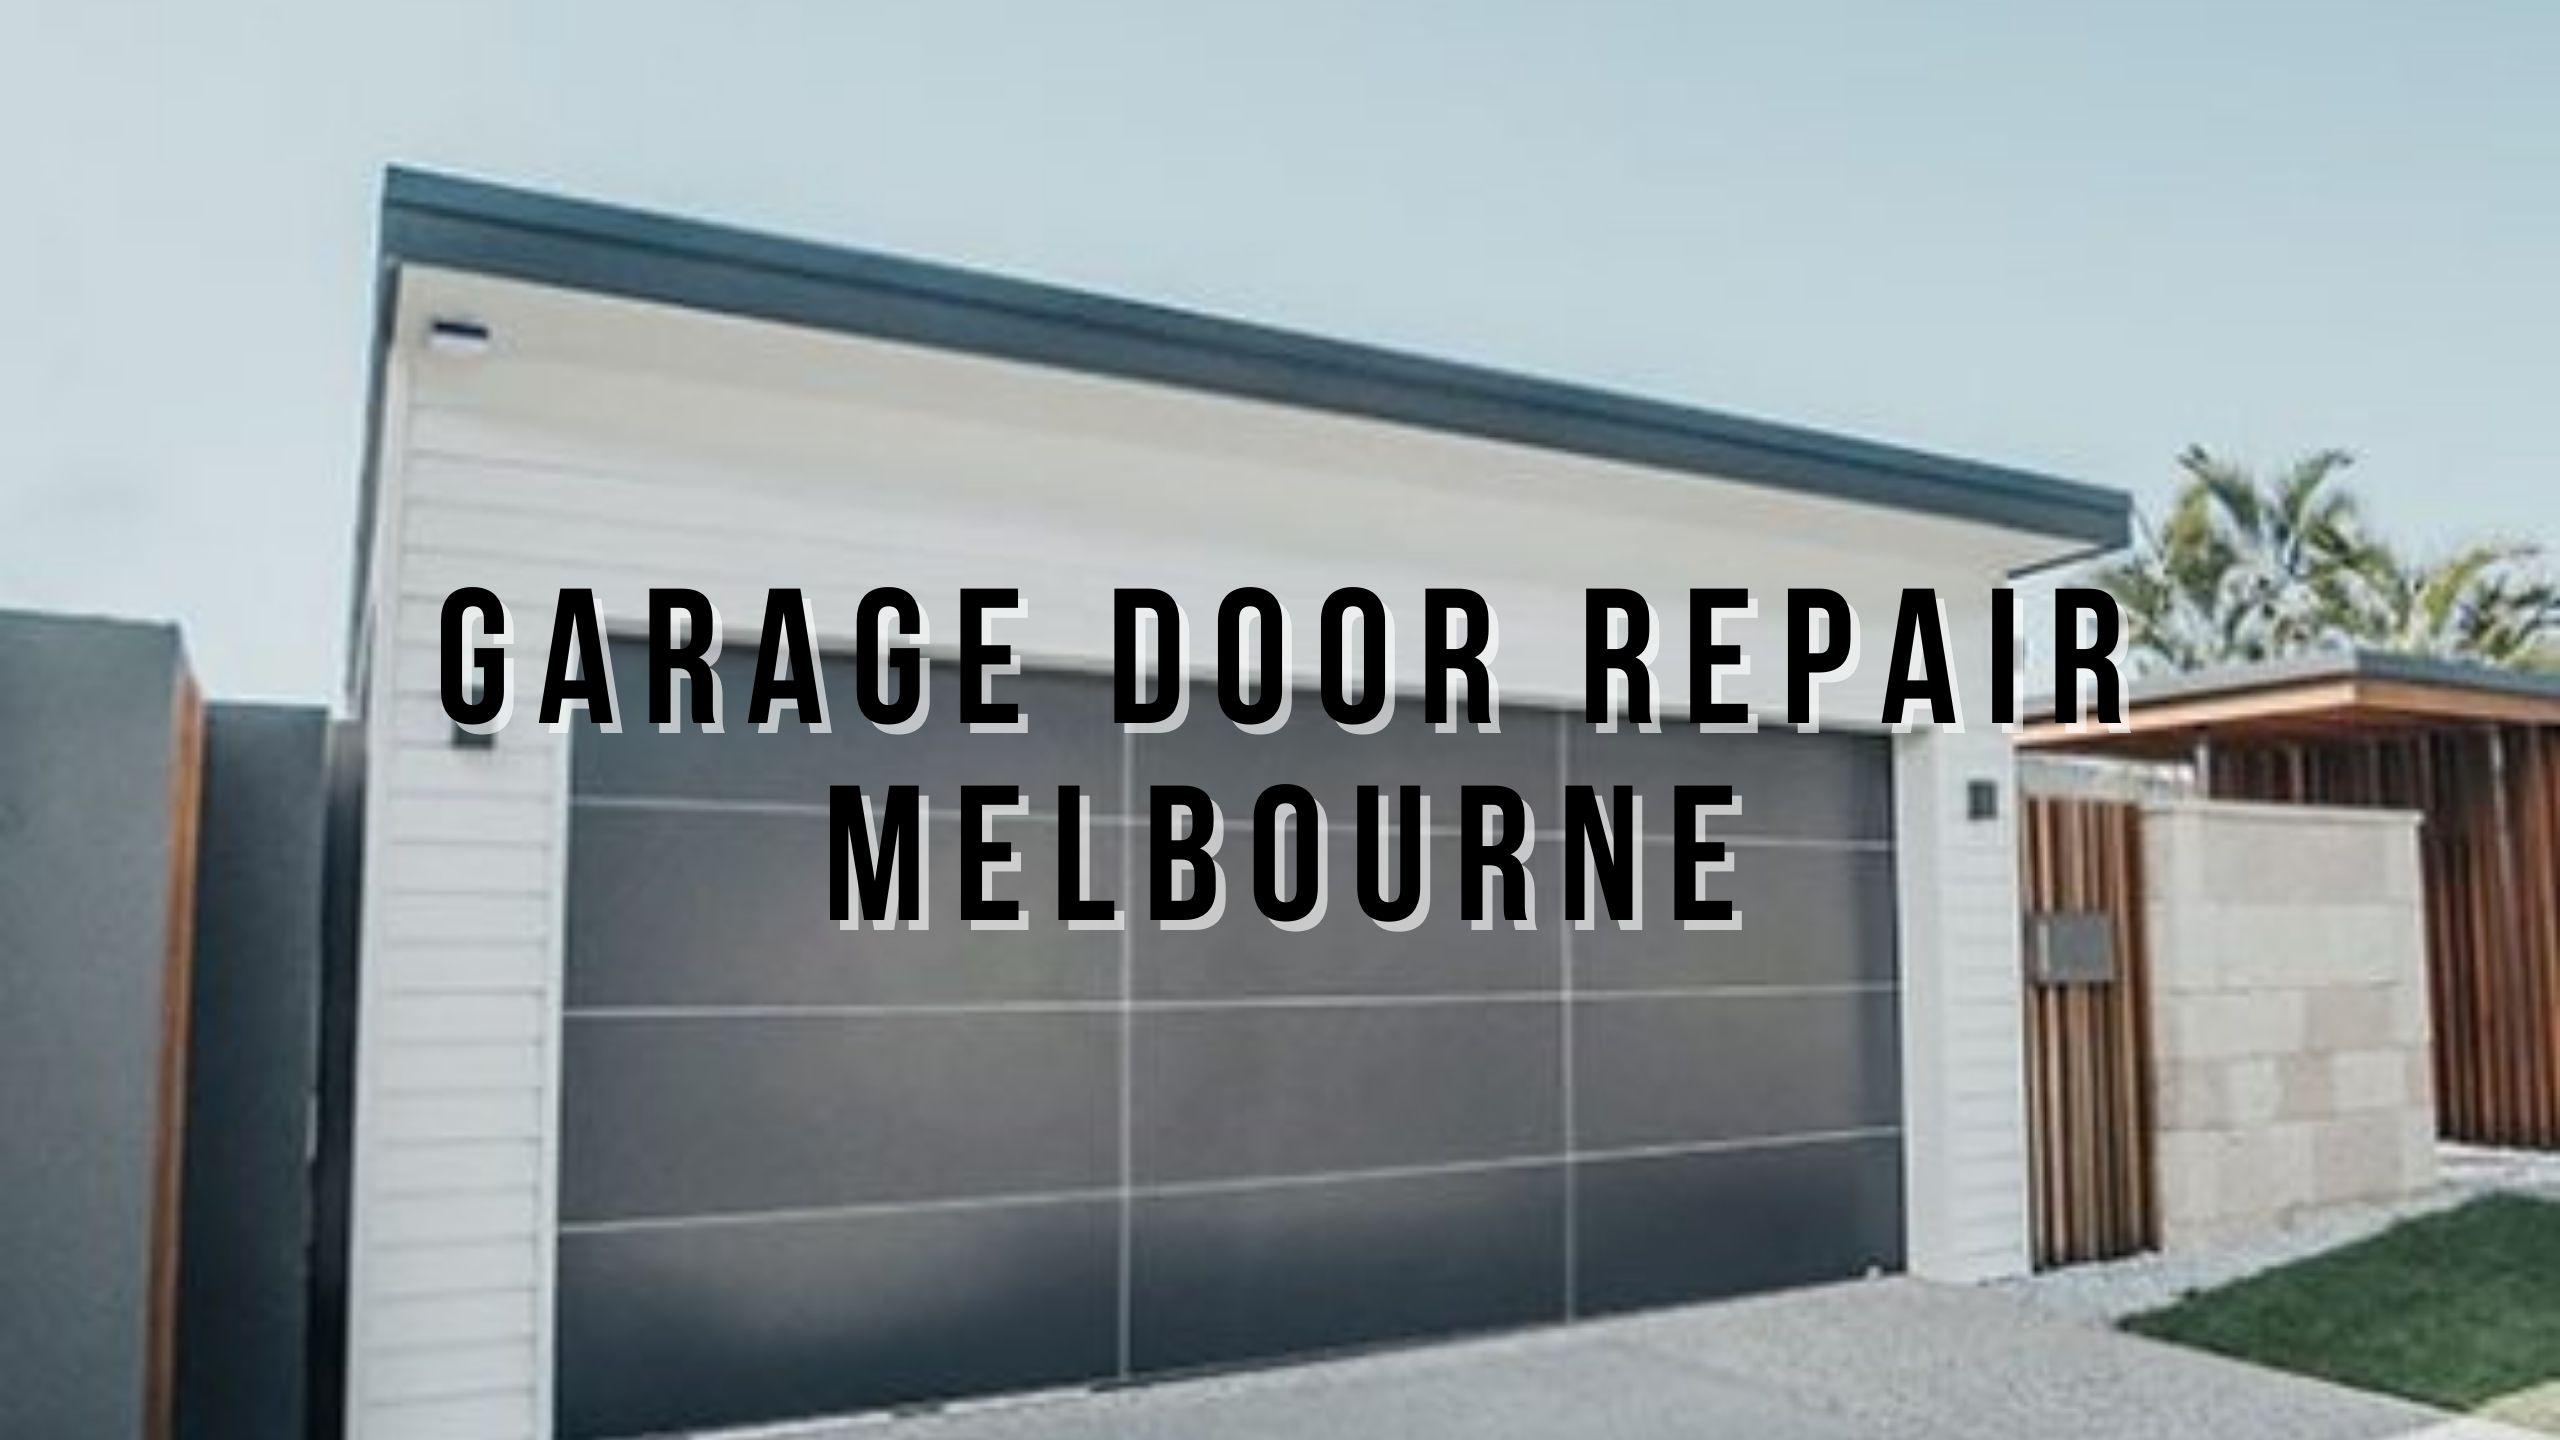 Garage door repair Melbourne